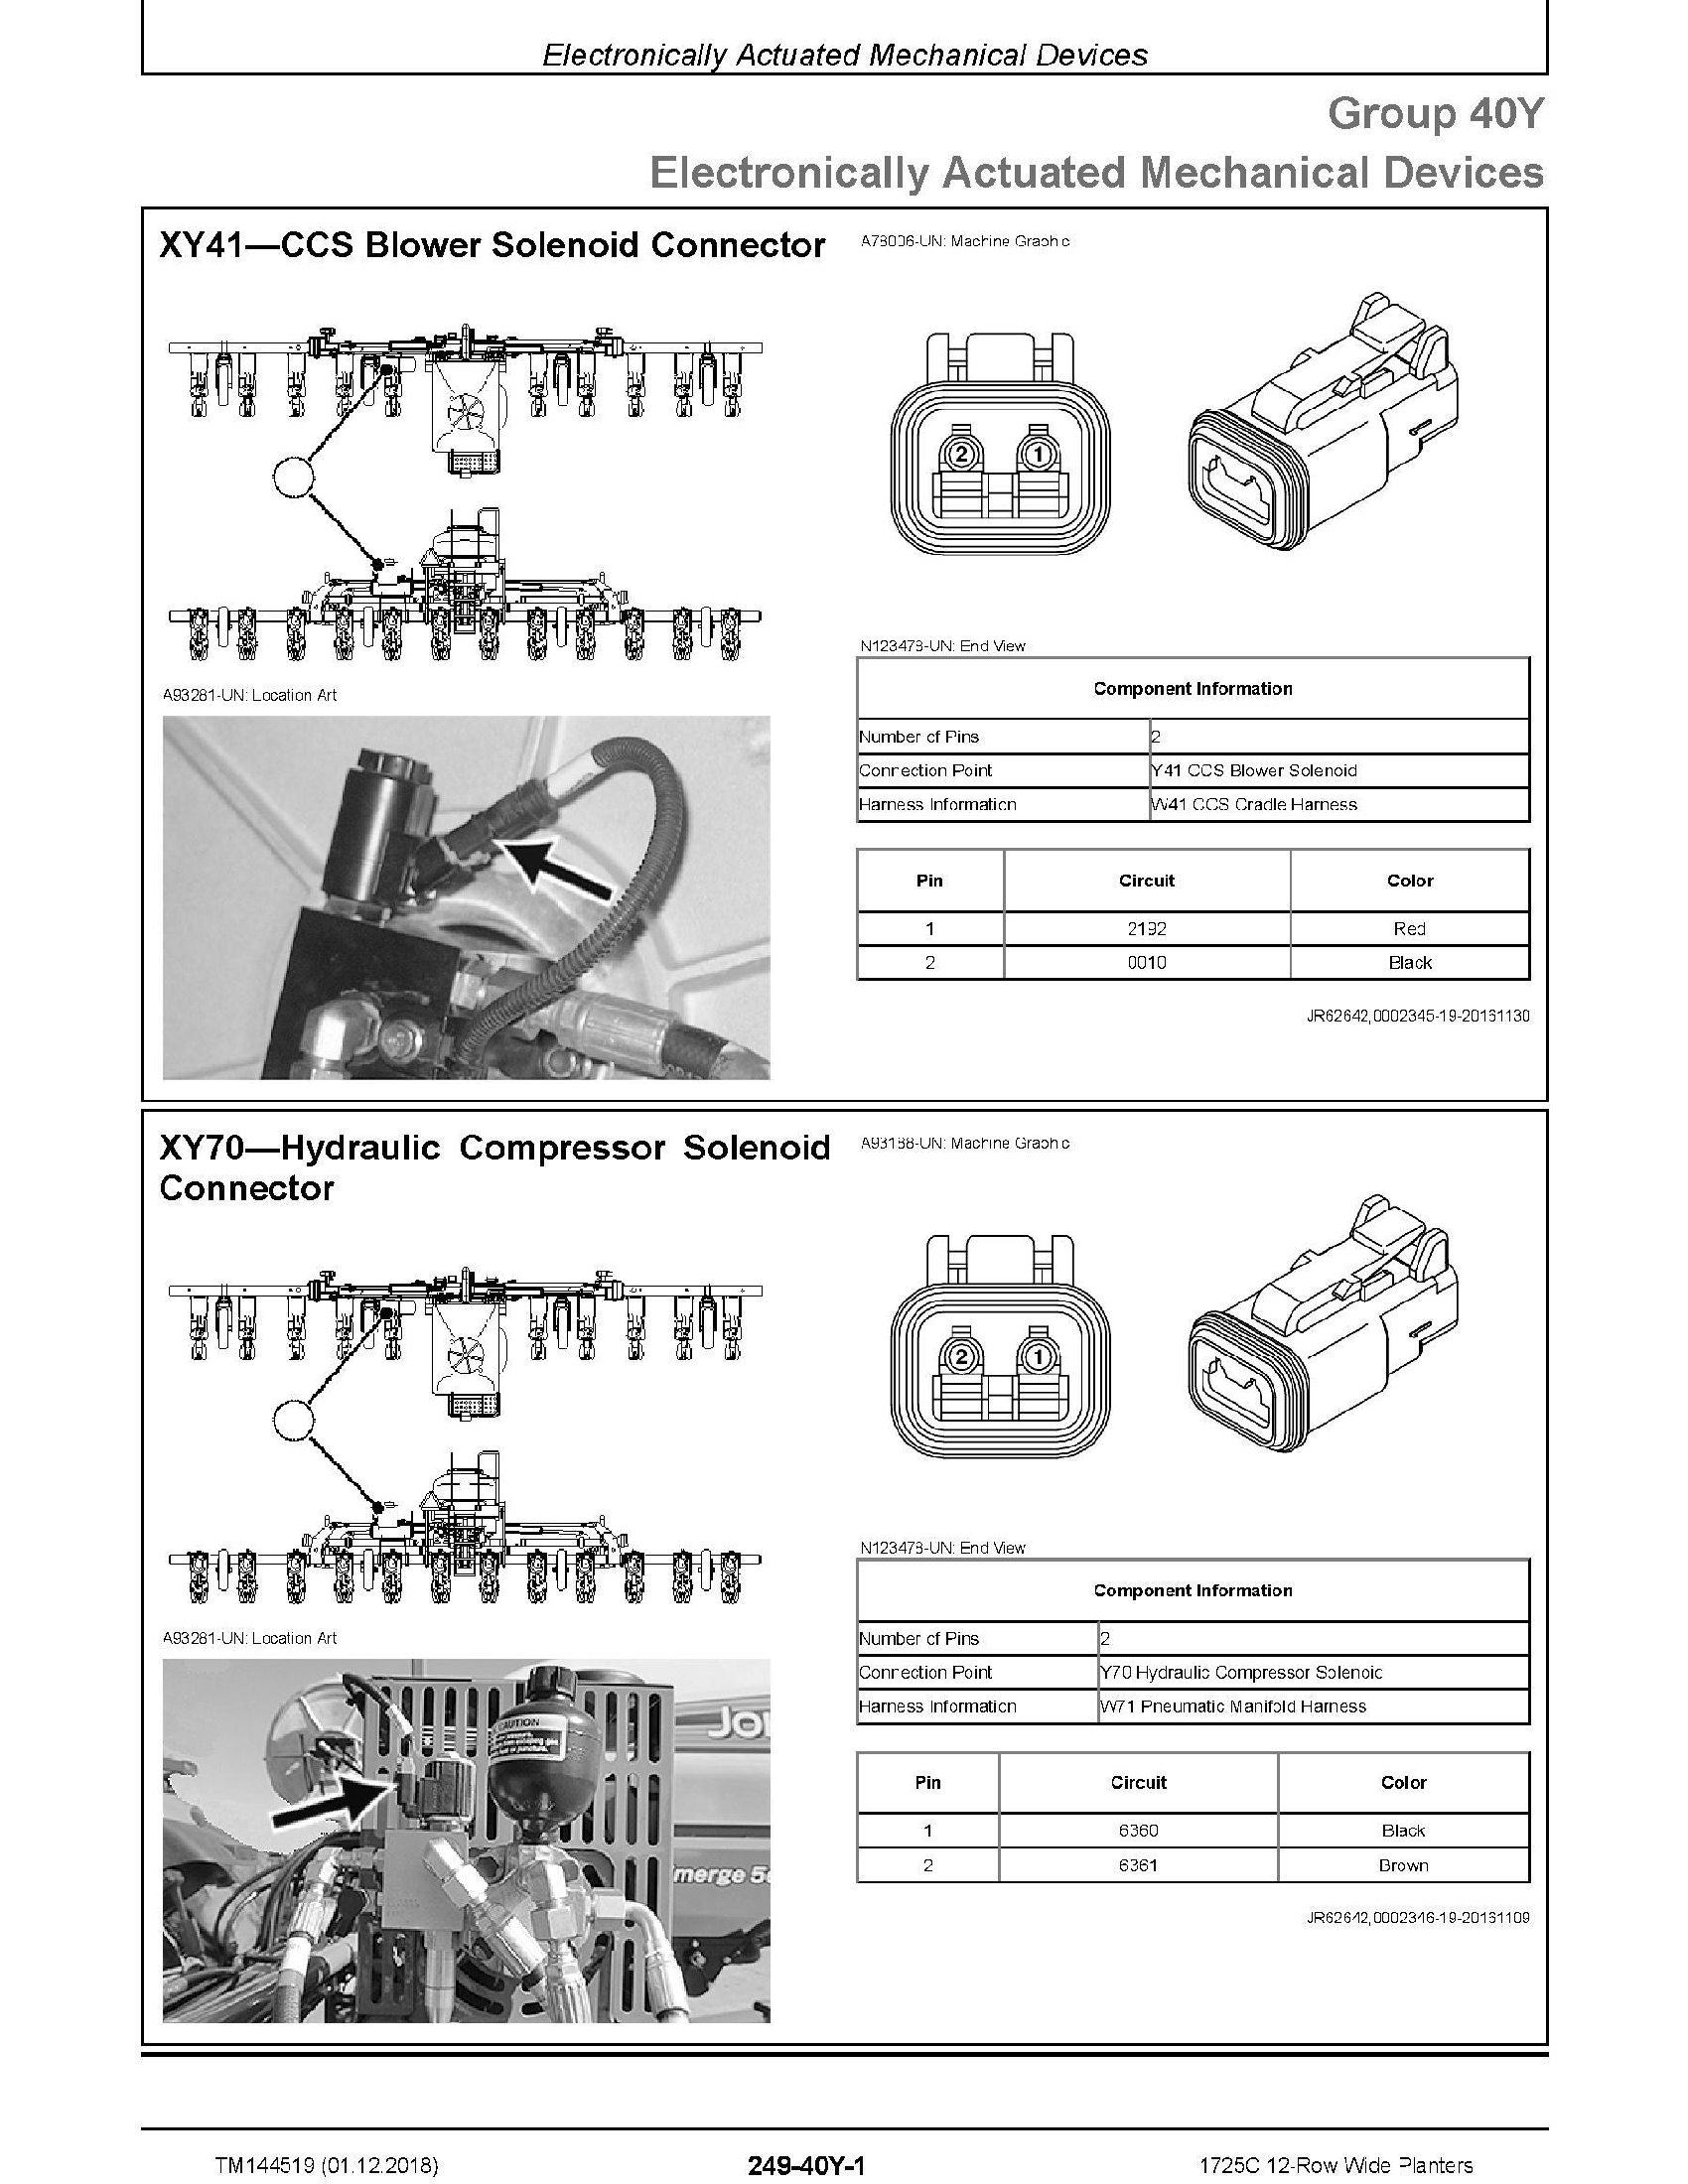 John Deere 5 manual pdf